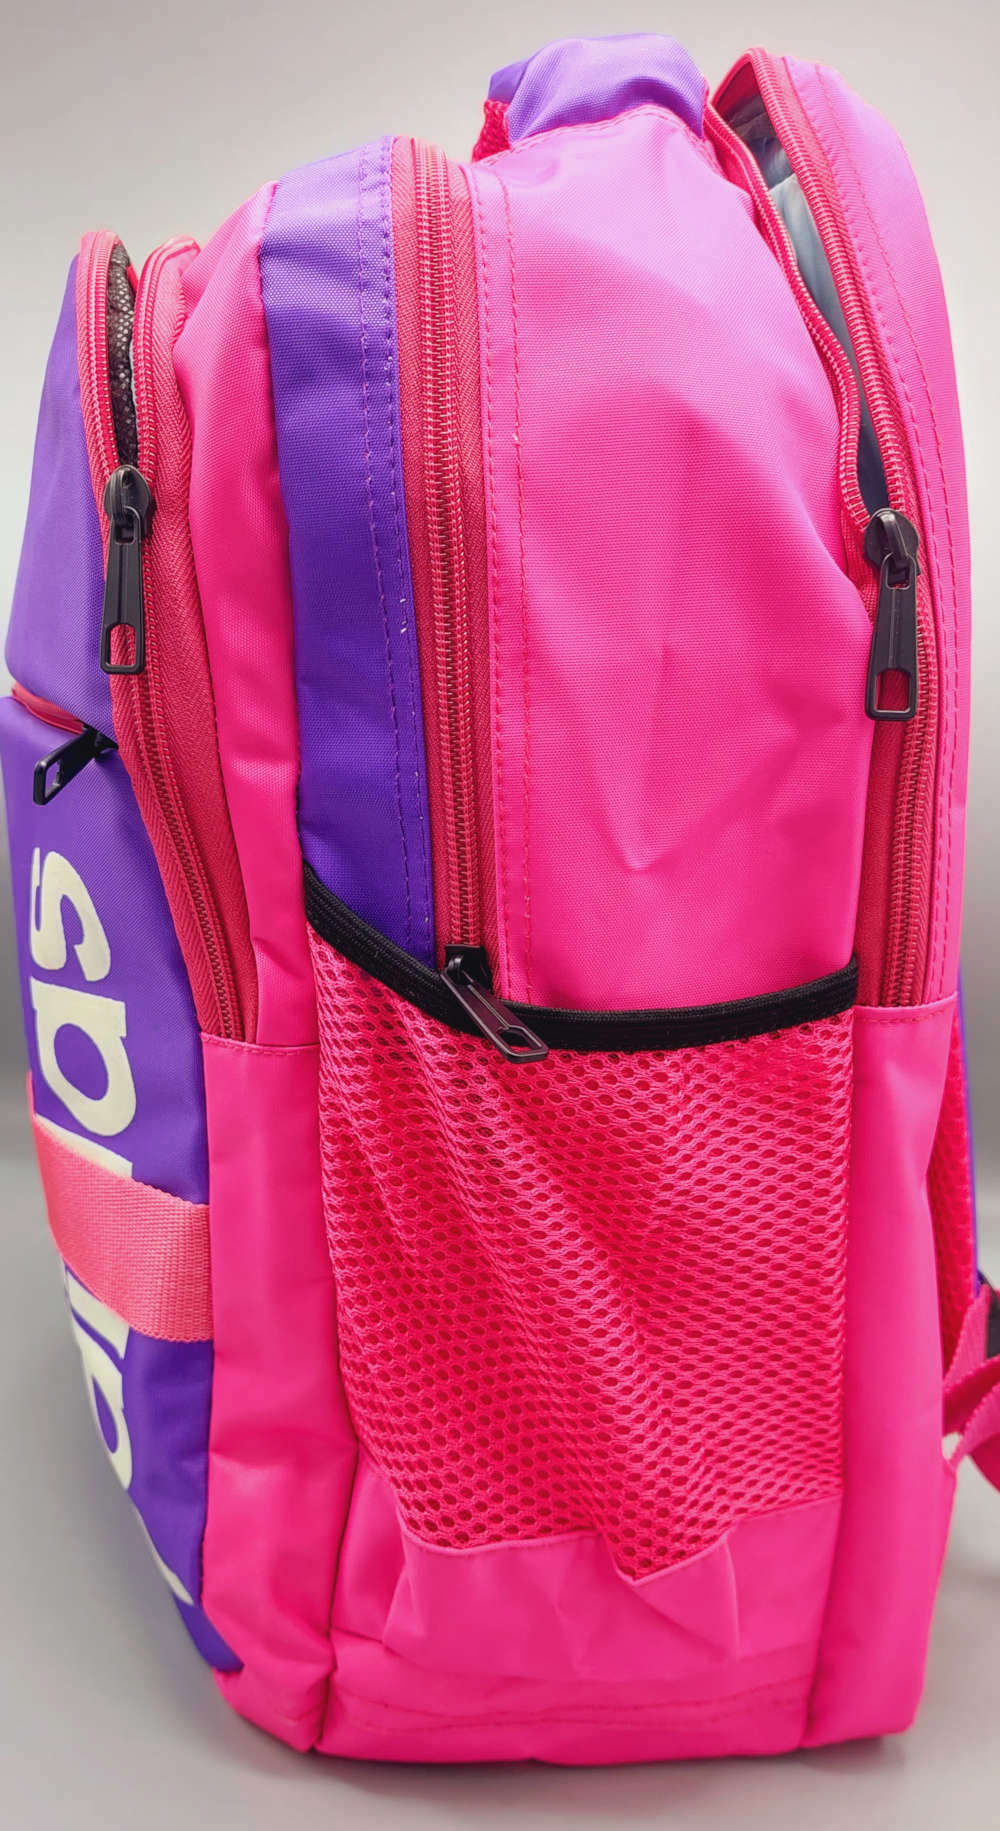 Adidas Originals Base Backpack 3 Stripes Backpack, School/Travel/Sports Bag  | eBay